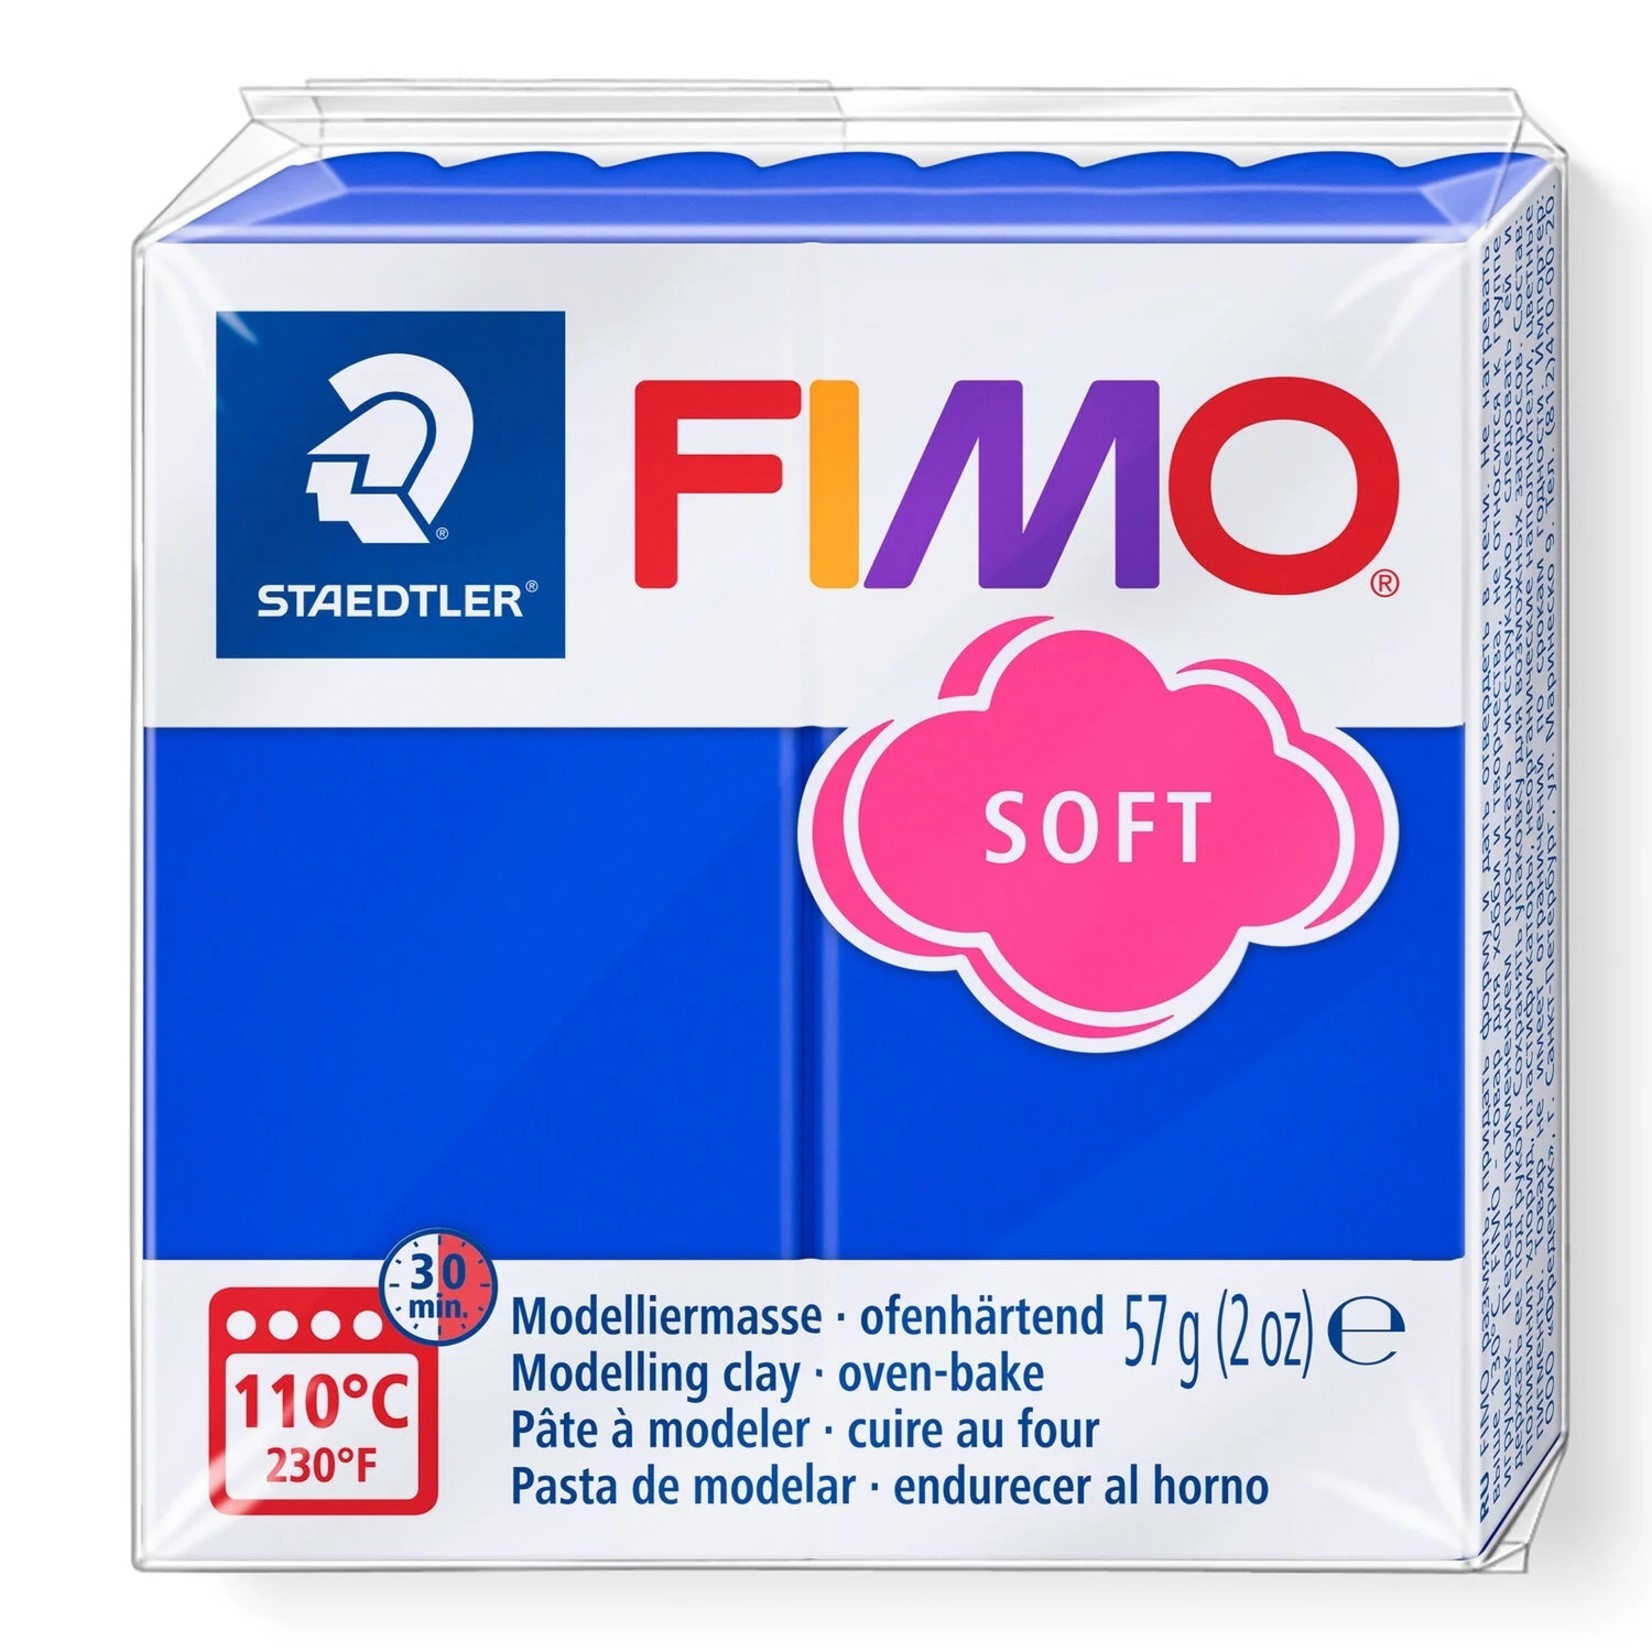 STAEDTLER FIMO SOFT 33 BRILLIANT BLUE